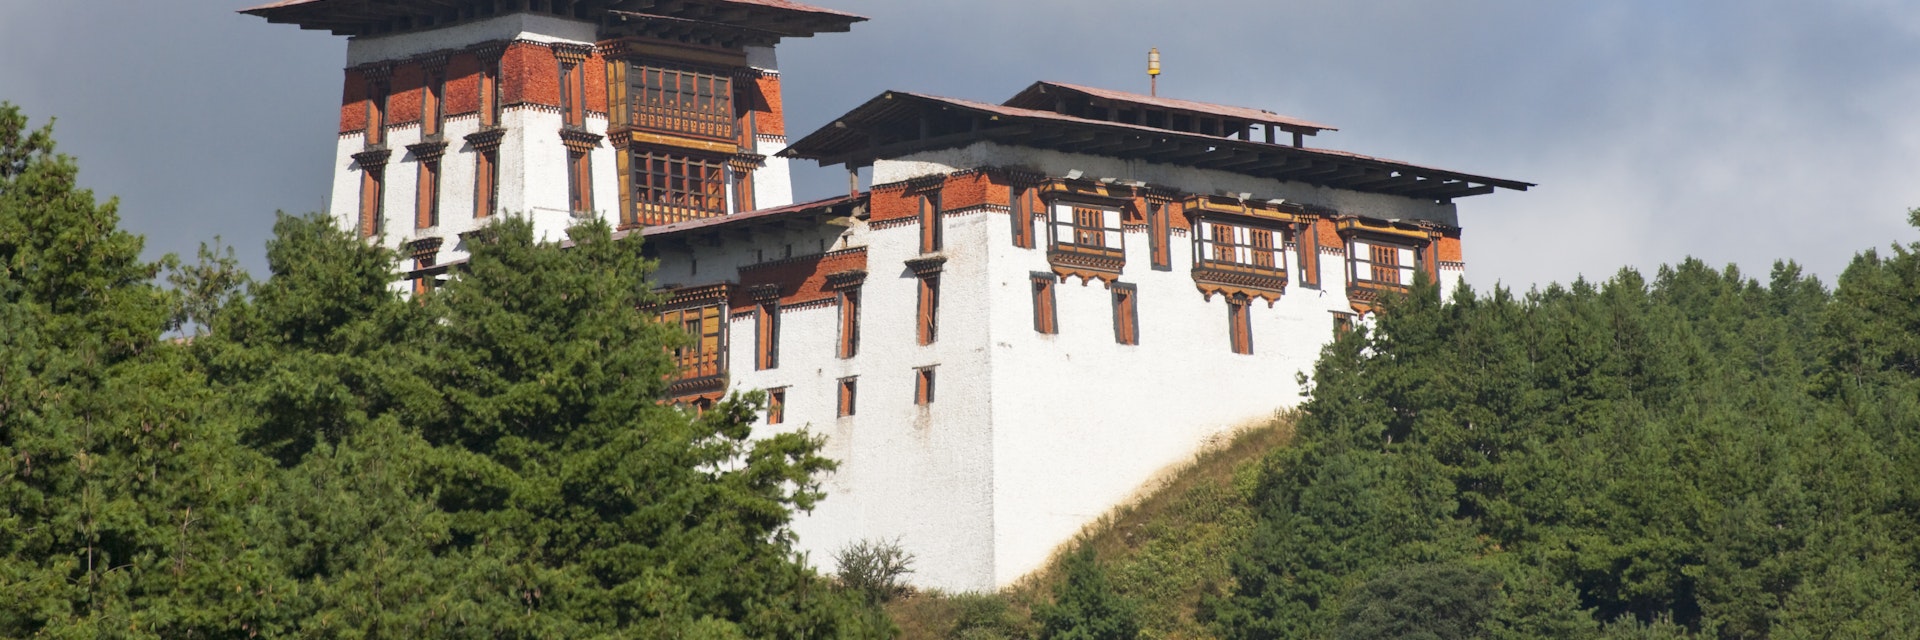 Jakar Dzong in mountains.